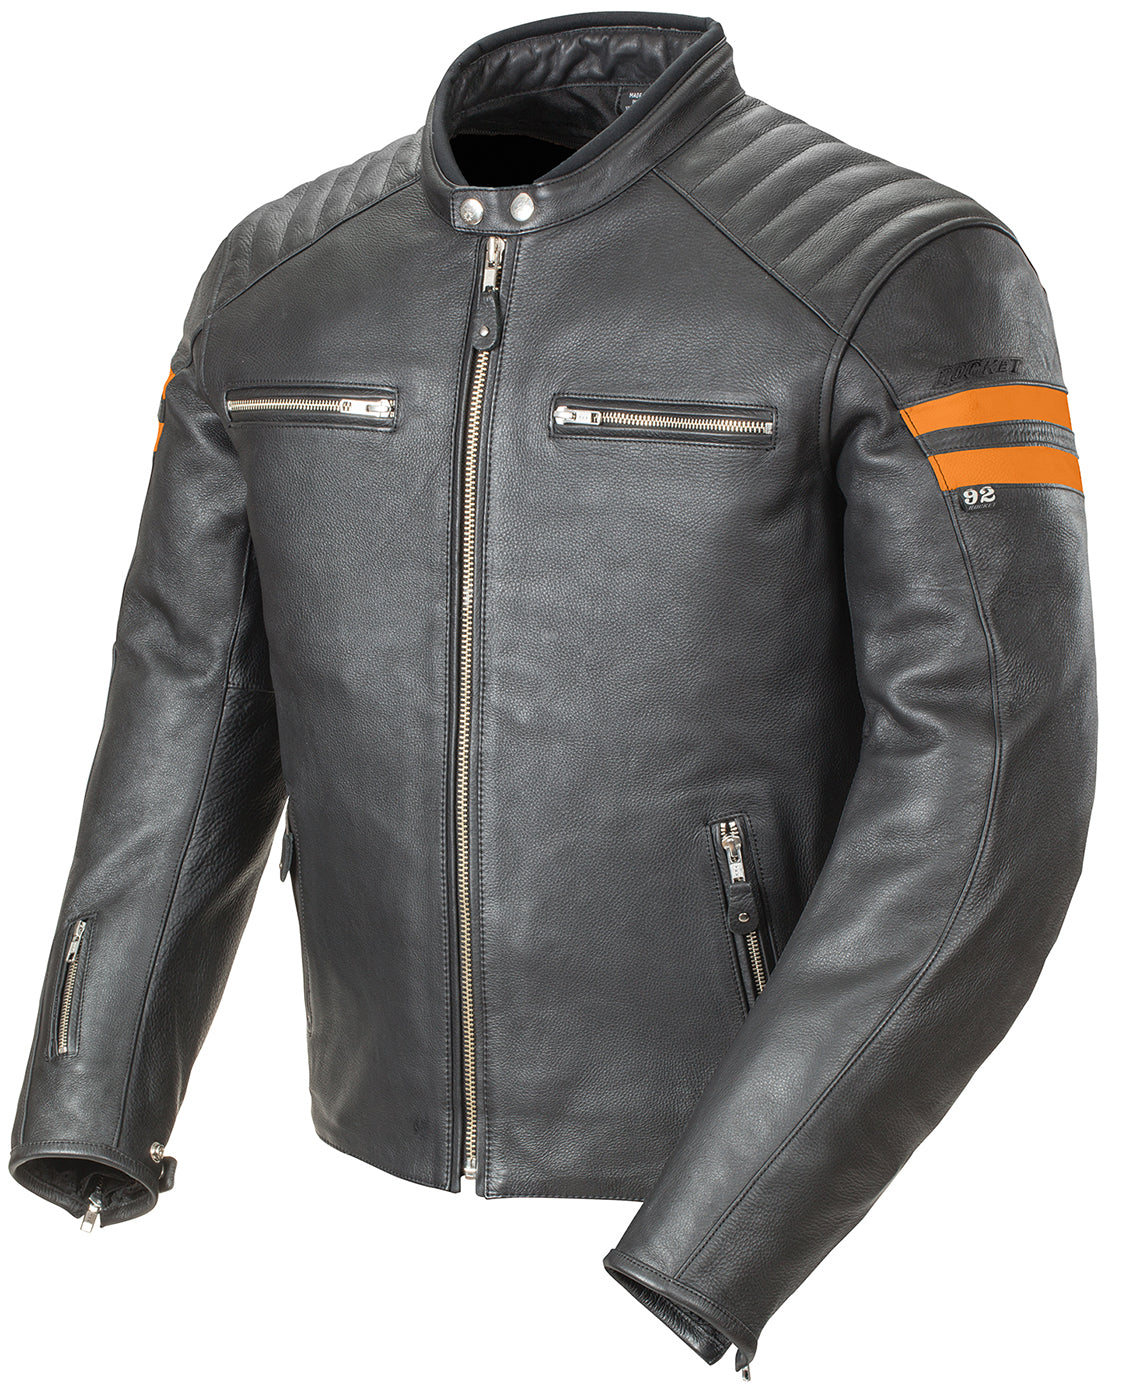 Joe Rocket Classic '92 Leather Jacket - Black/Orange